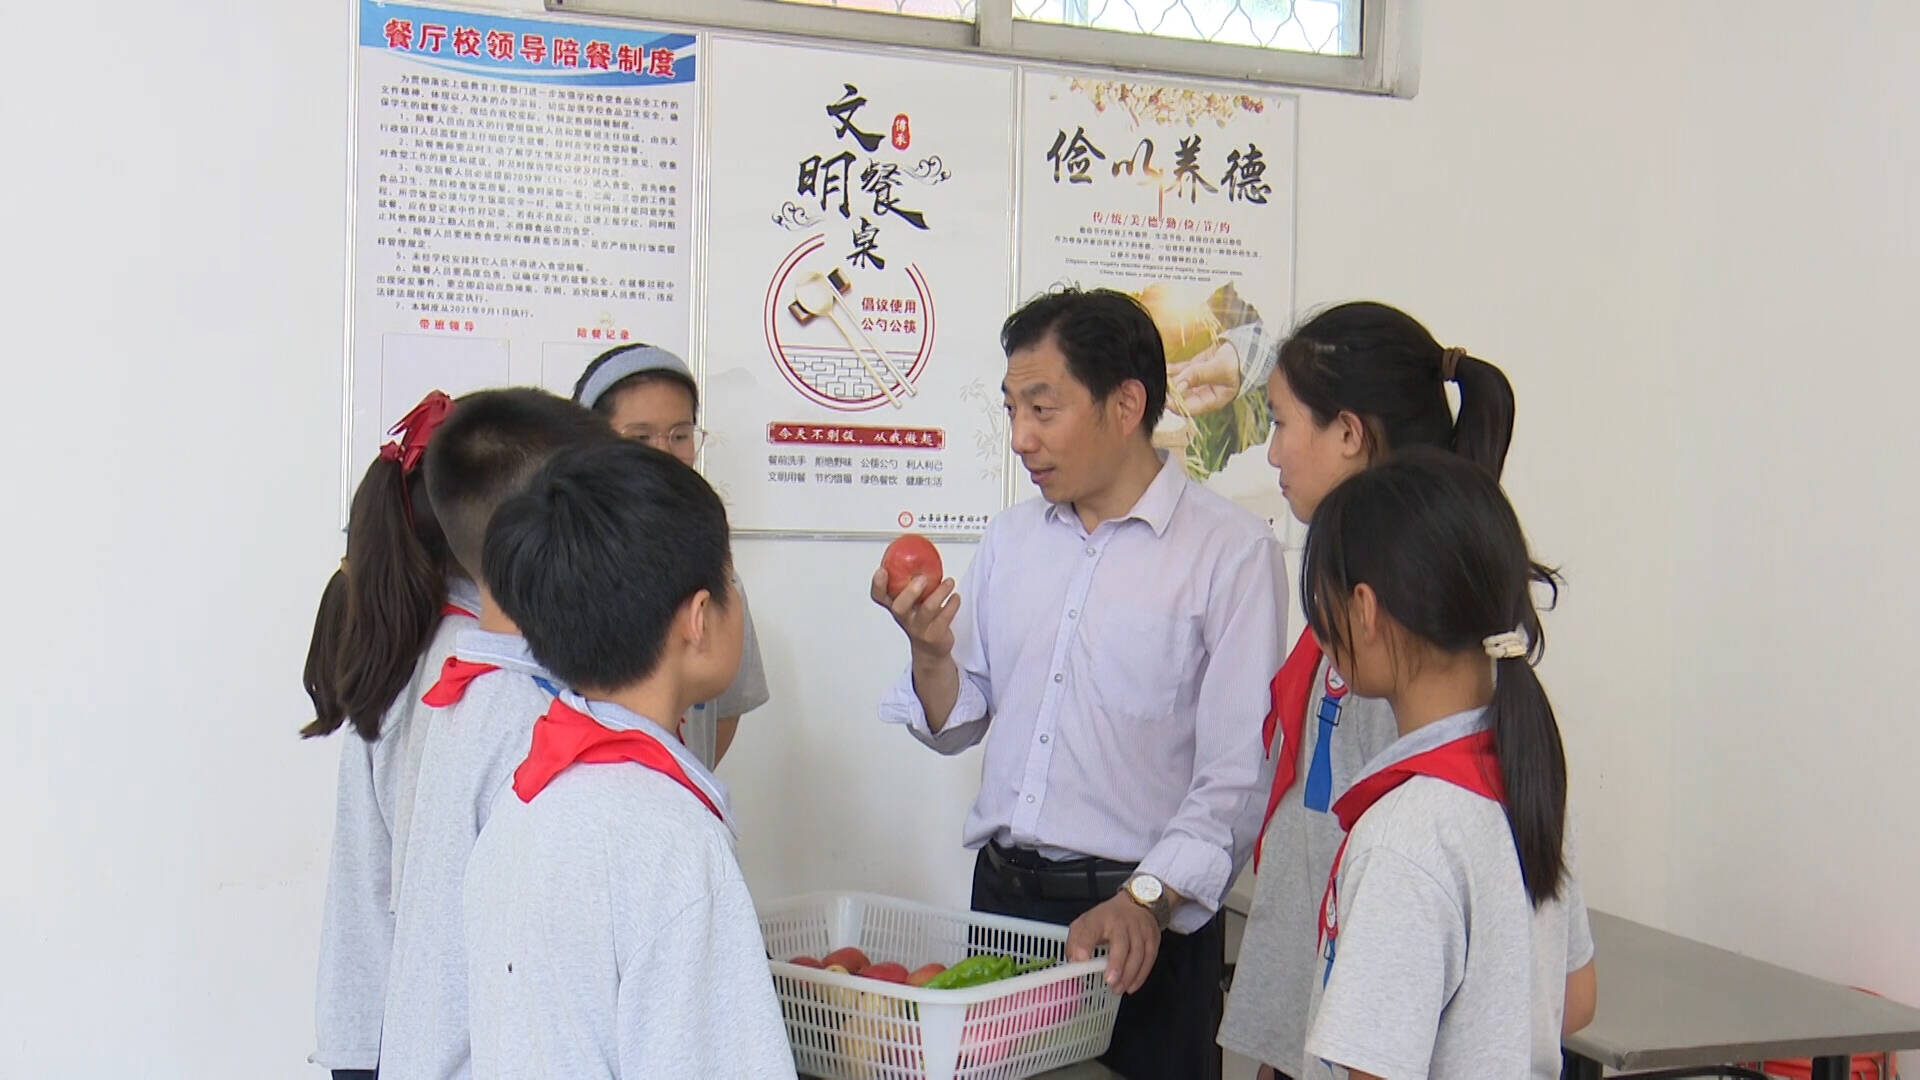 中国学生营养日将至 枣庄山亭学校开展形式多样宣传活动